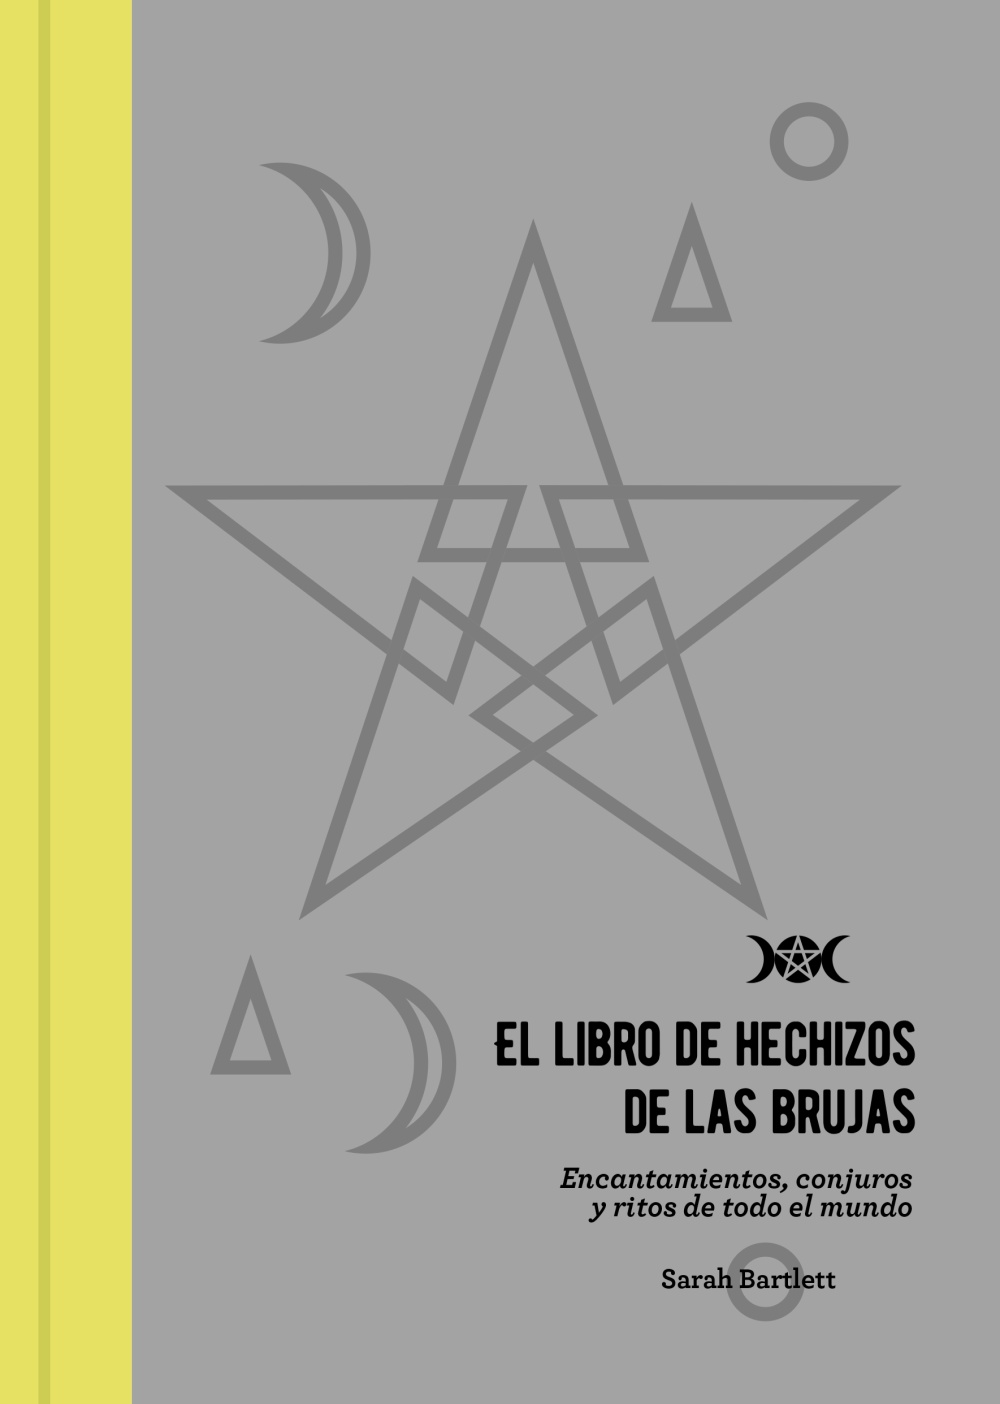 el-libro-de-hechizos-de-las-brujas-978-84-415-4080-4.jpg